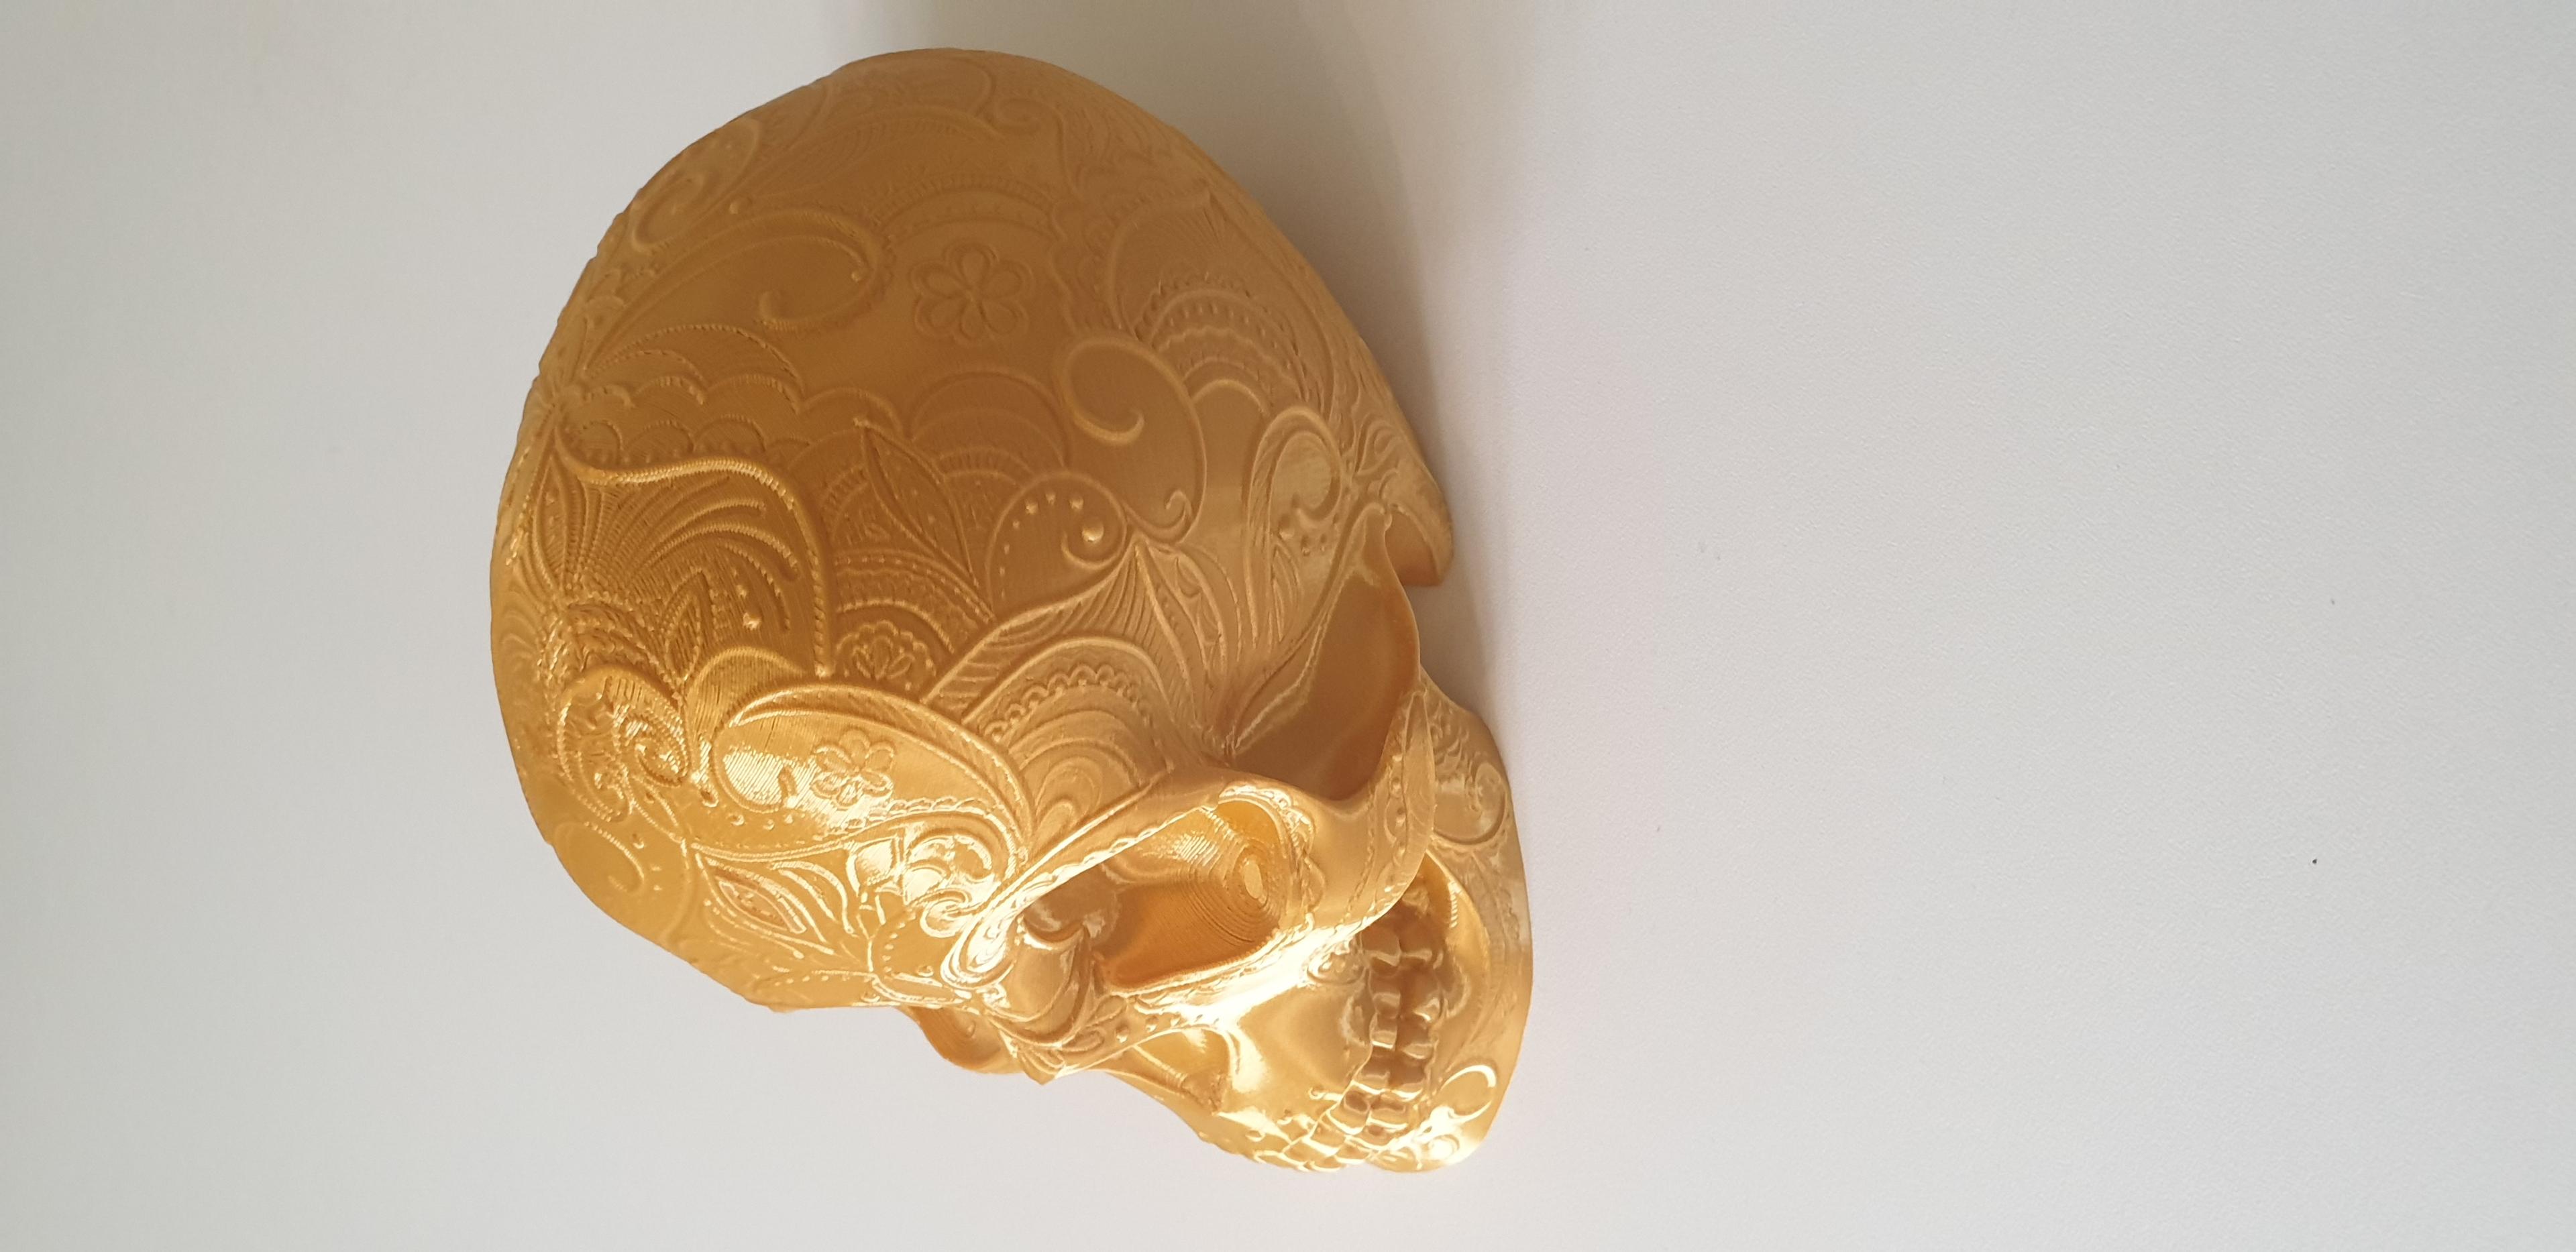 Mandala Lace Skull - Mandala Skull - Side view - 3d model